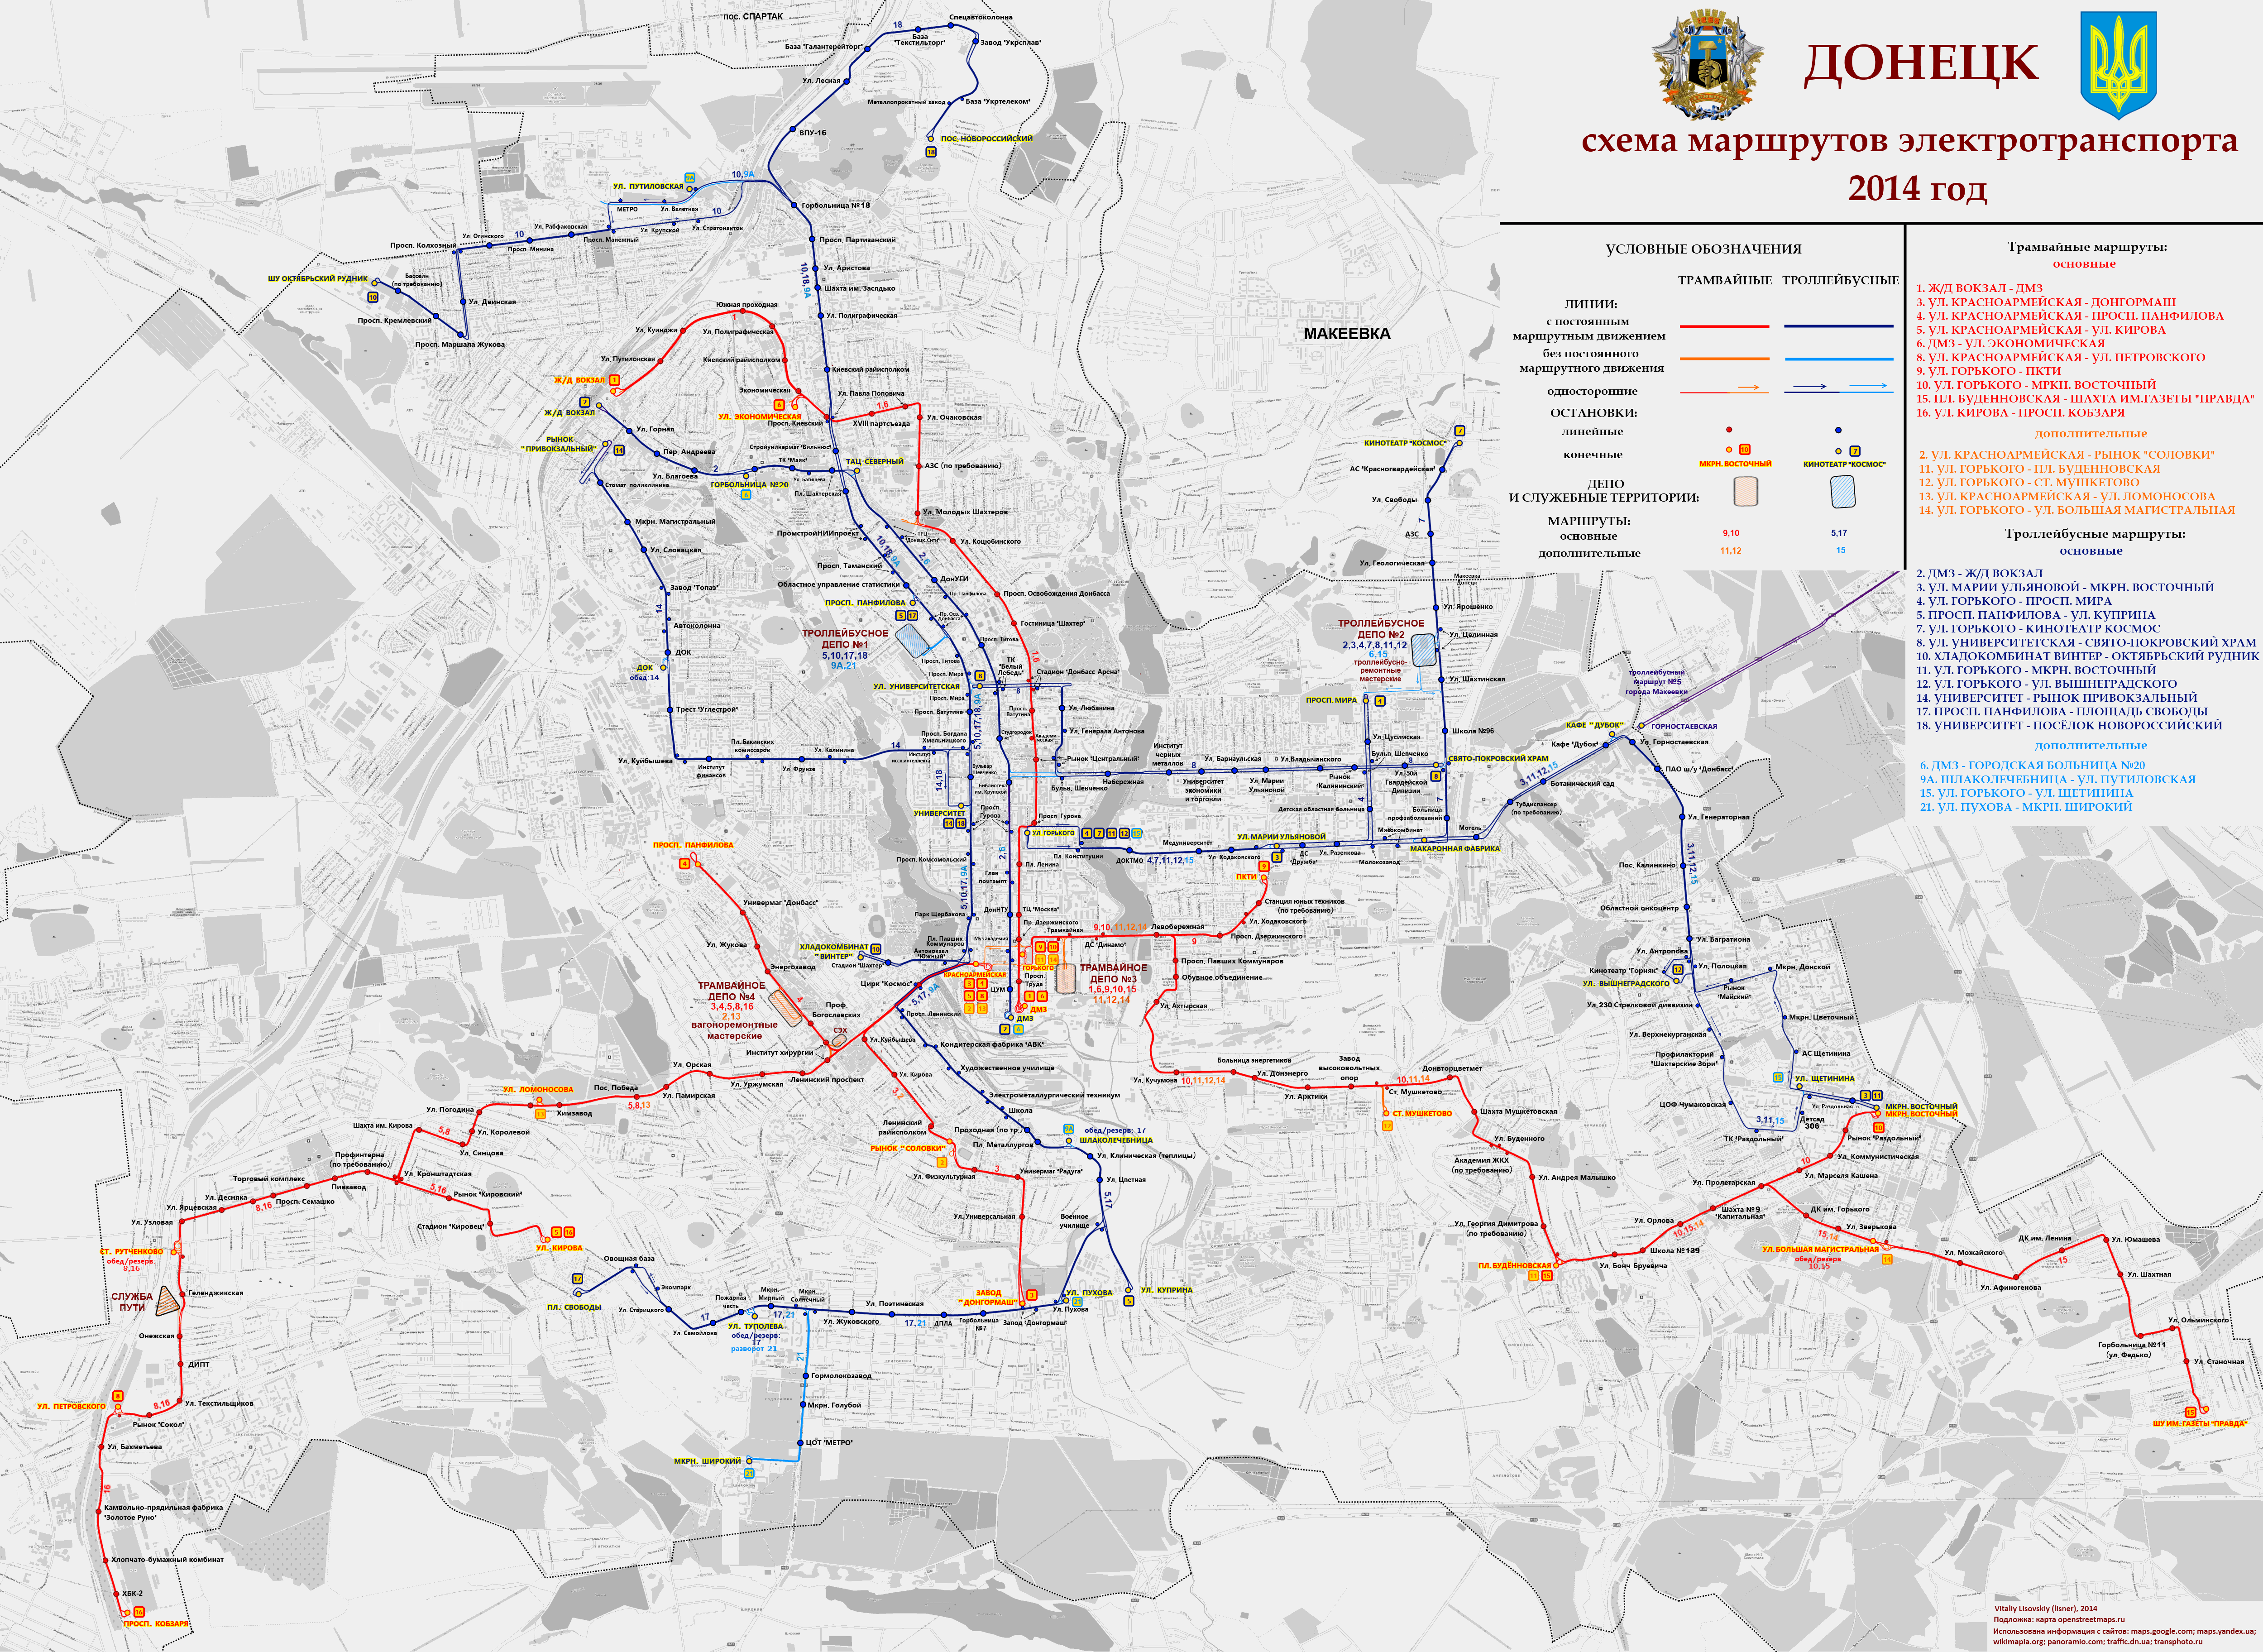 Донецк — Карты и схемы